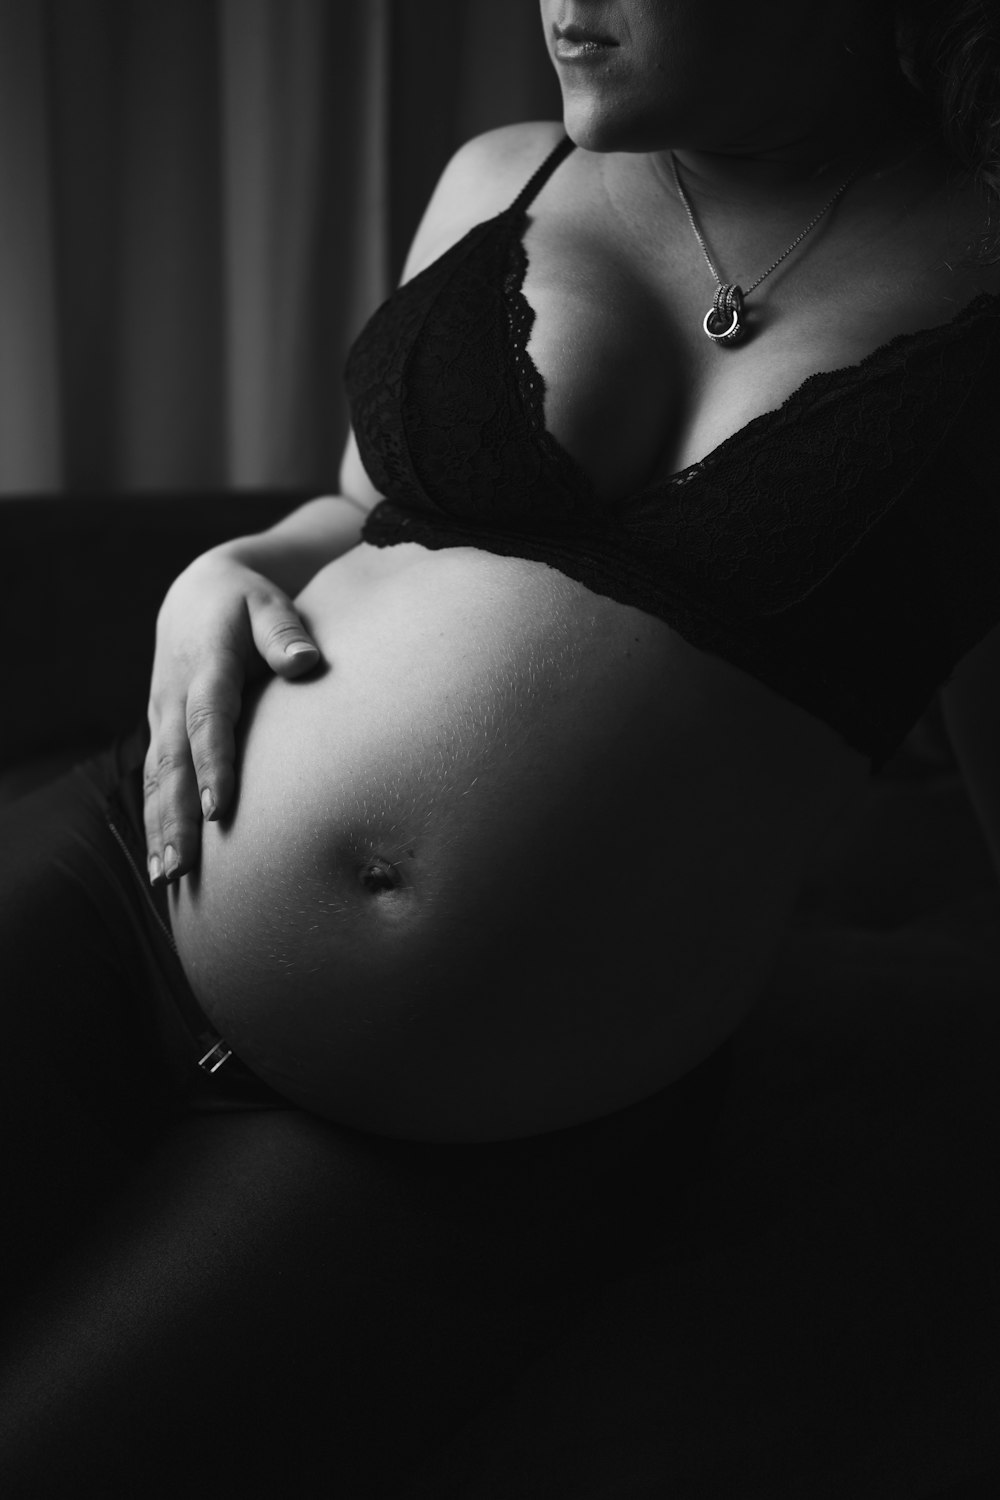 黒のブラジャーを身に着けている妊婦のグレースケール写真